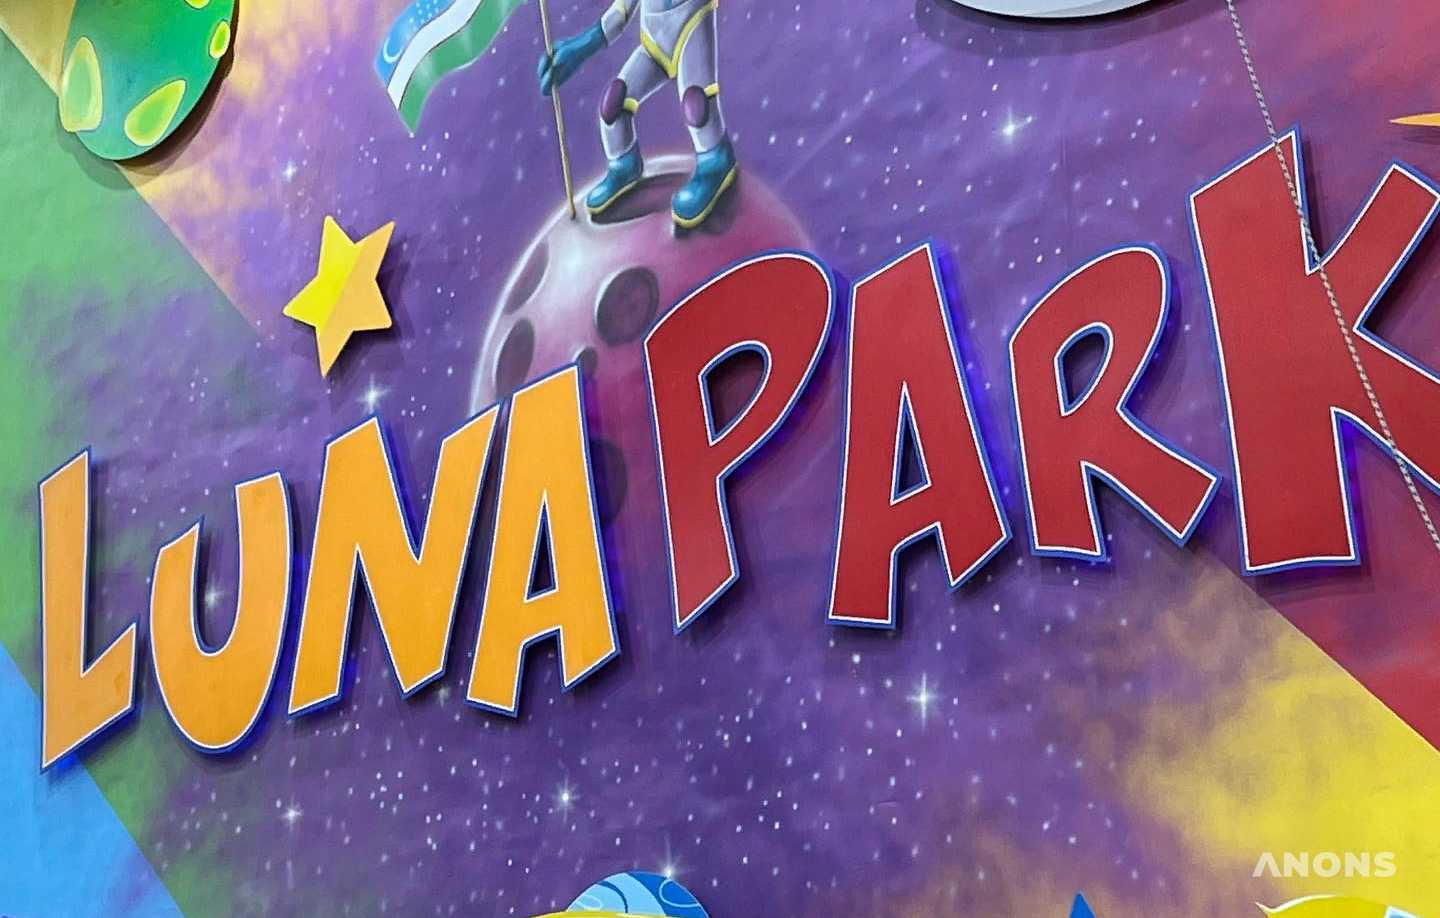 Шоу с аниматорами в Luna Park